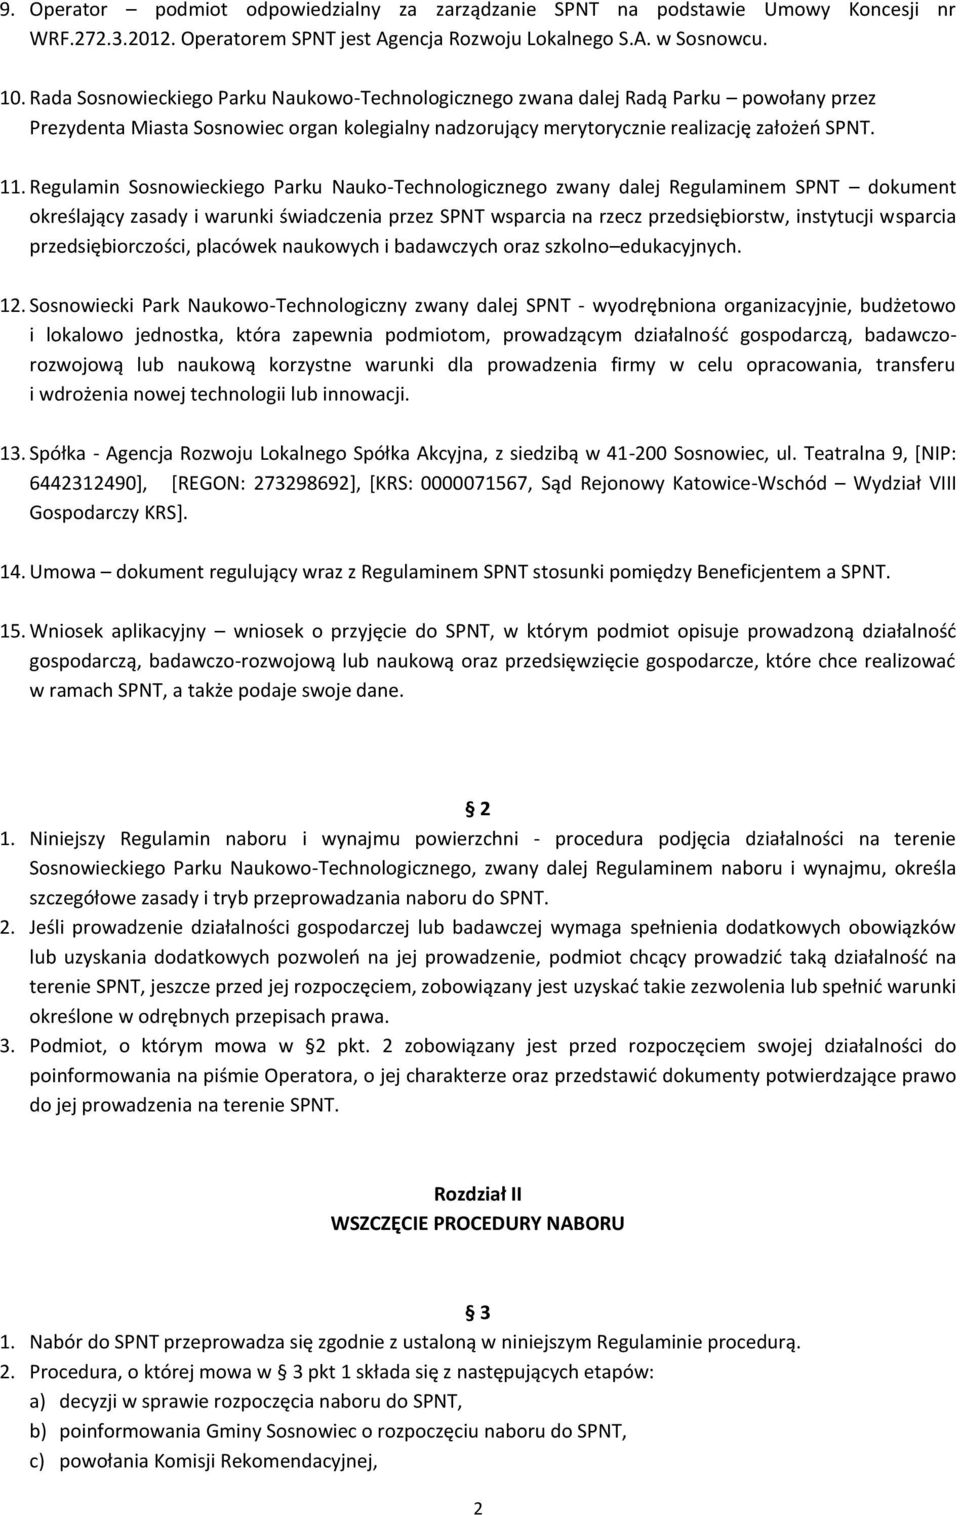 Regulamin Sosnowieckiego Parku Nauko-Technologicznego zwany dalej Regulaminem SPNT dokument określający zasady i warunki świadczenia przez SPNT wsparcia na rzecz przedsiębiorstw, instytucji wsparcia